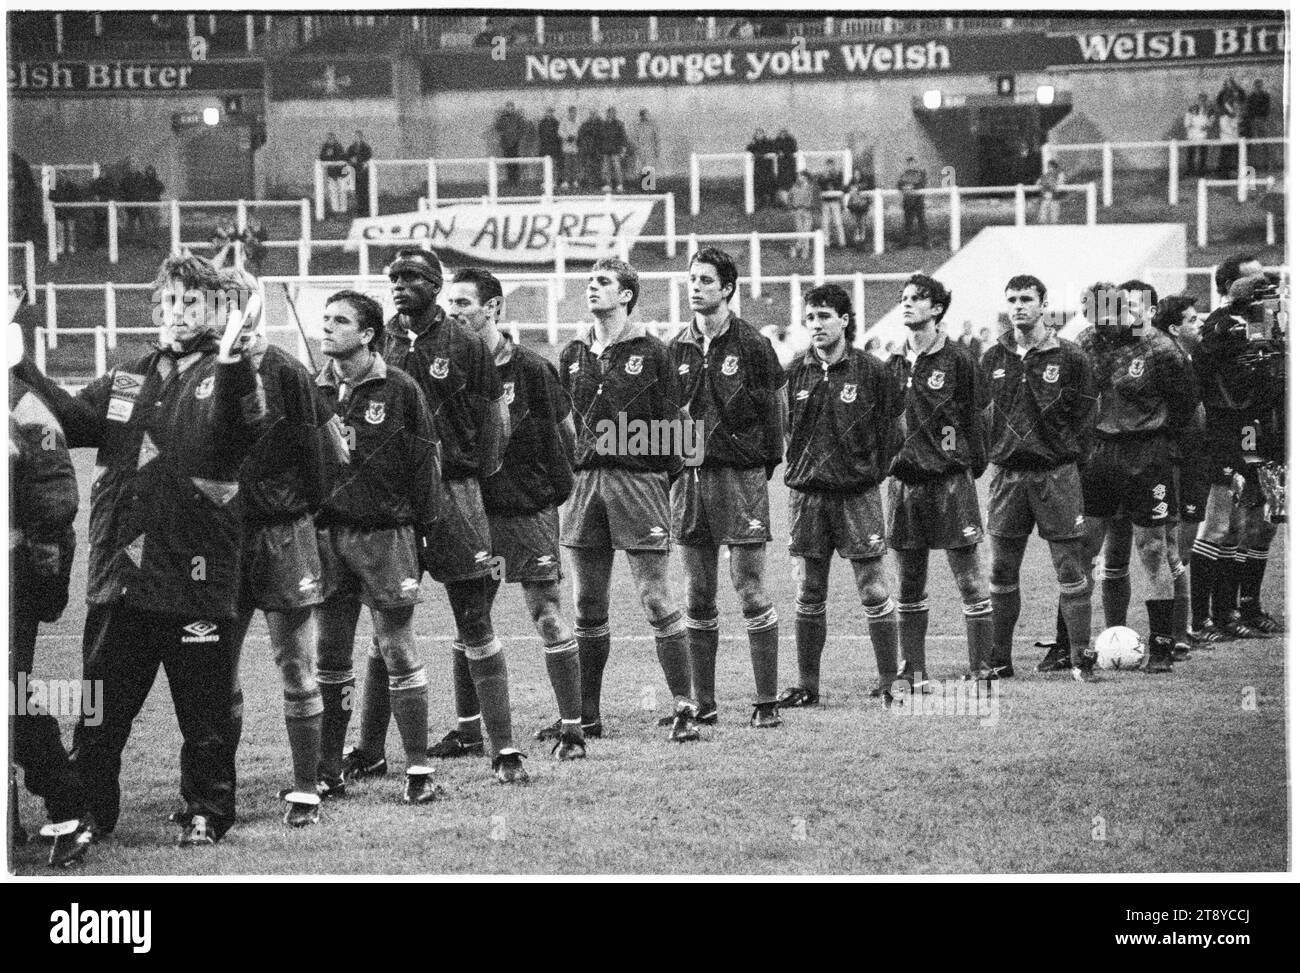 Toute la ligne Welsh Squad pour les hymnes au départ. Coupe du monde de la FIFA 1994 qualification Groupe 4 – pays de Galles contre Roumanie au Cardiff Arms Park, pays de Galles, Royaume-Uni, le 17 novembre 1993. Une victoire pour le pays de Galles dans ce dernier match de groupe confirmerait la qualification comme seul représentant du Royaume-Uni. À 64 minutes avec le score à 1-1, le pays de Galles a eu un penalty pour prendre la tête, mais le coup de pied spot de Paul Bodin a frappé la barre. Florin Raducioiu a marqué le vainqueur pour la Roumanie en 82 minutes et ils se sont qualifiés à la place. Photo : Rob Watkins Banque D'Images